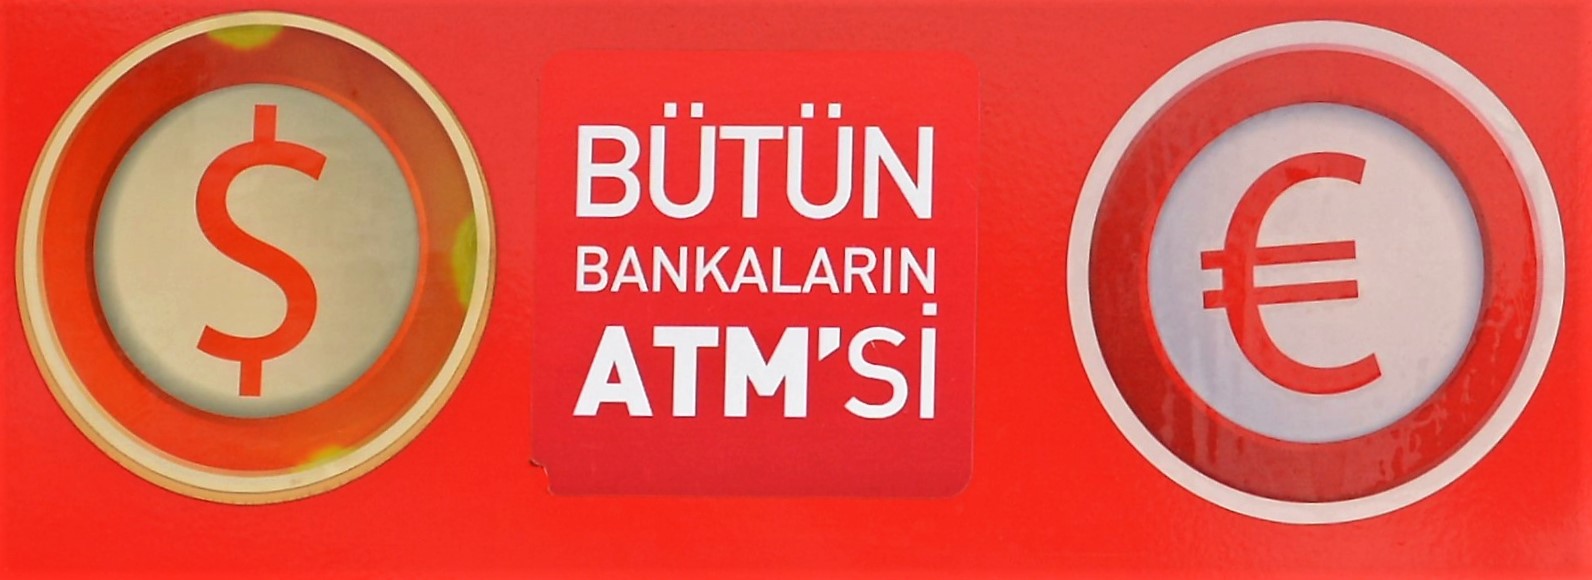 Банки, работающие по субботам в Анталии